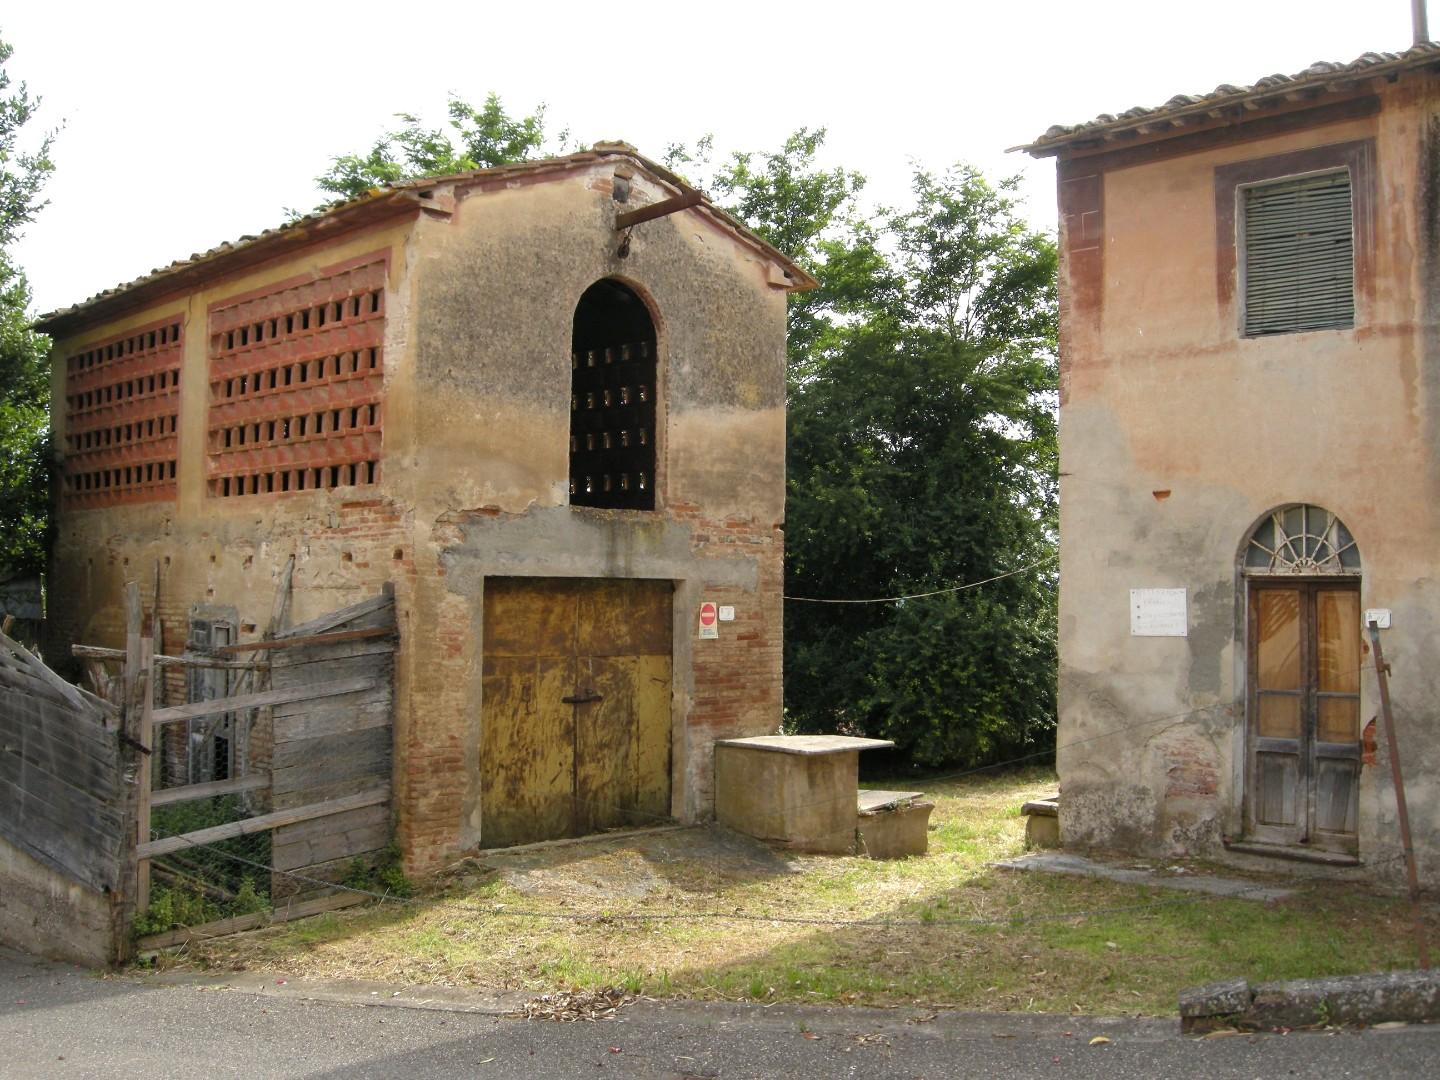 Rustico / Casale in vendita a Palaia, 7 locali, prezzo € 100.000 | PortaleAgenzieImmobiliari.it